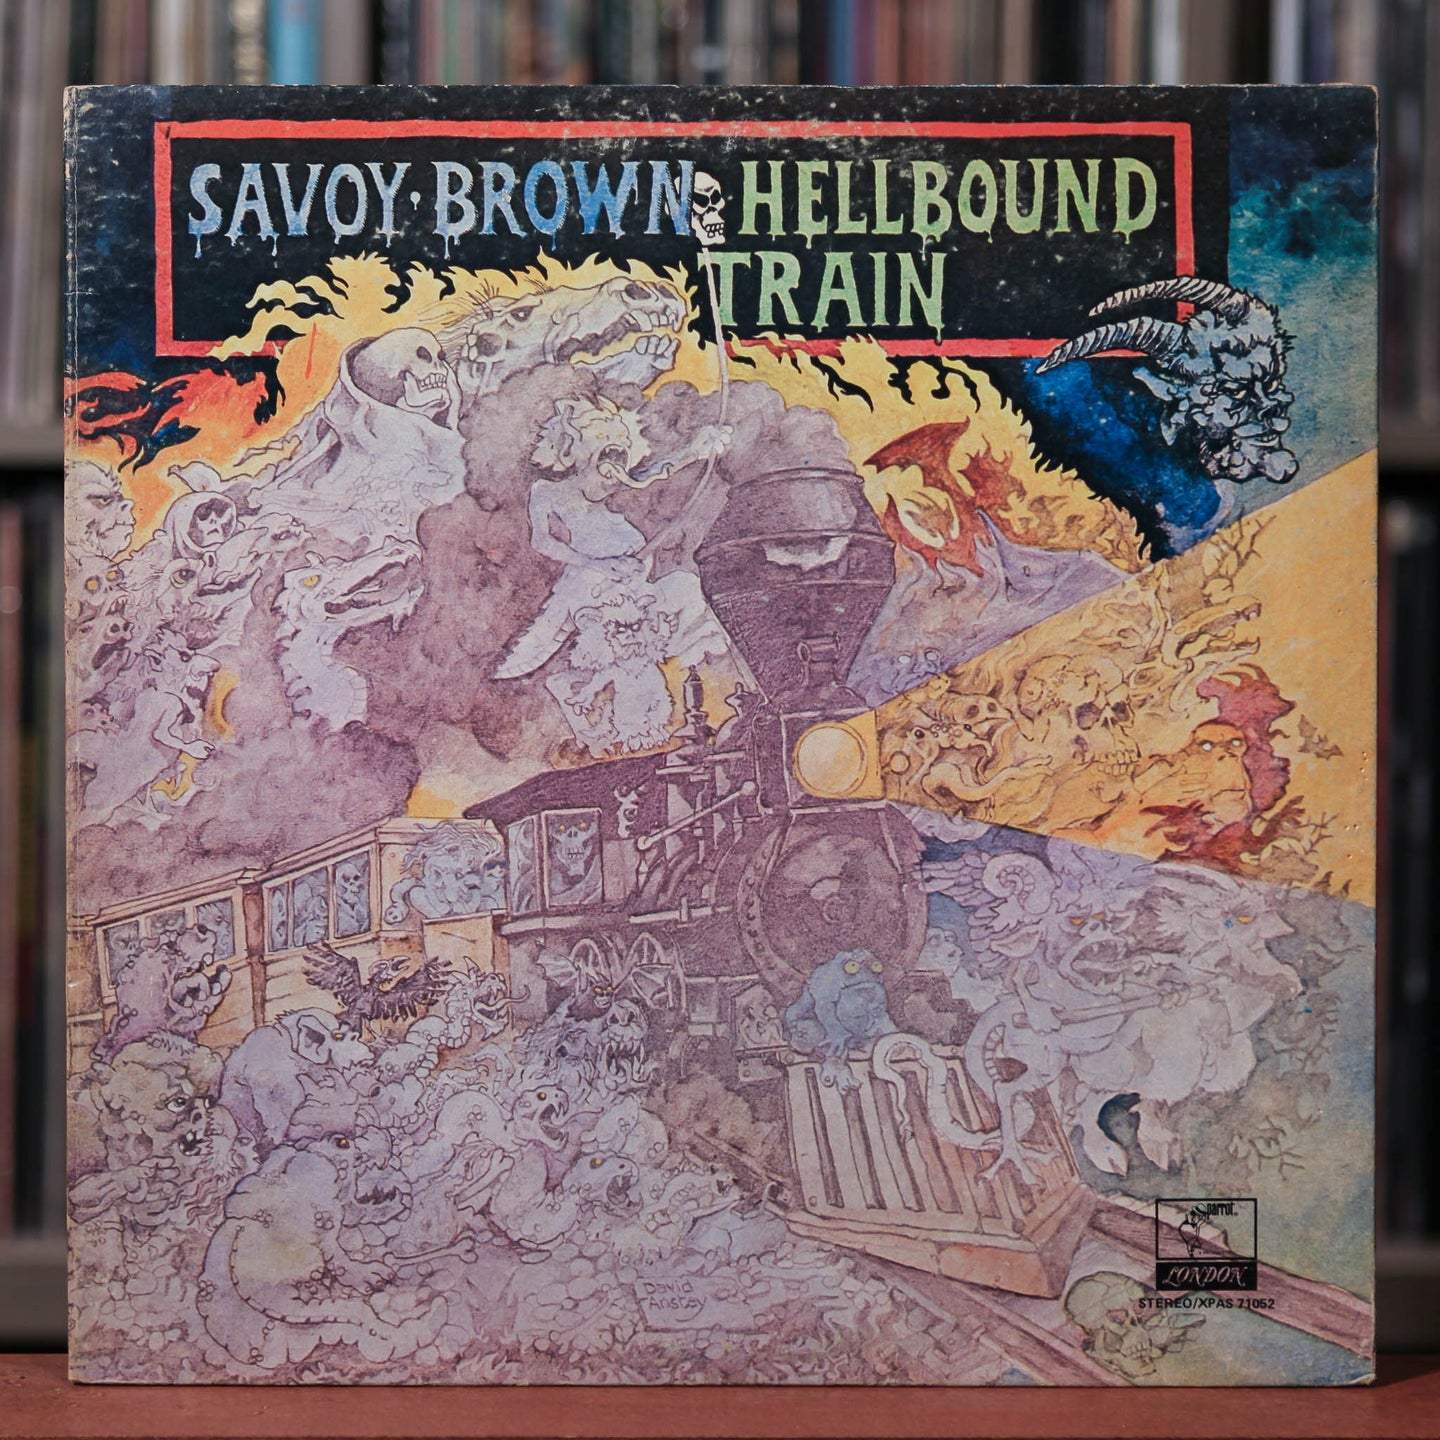 Savoy Brown - Hellbound Train - 1972 Parrot, VG+/VG